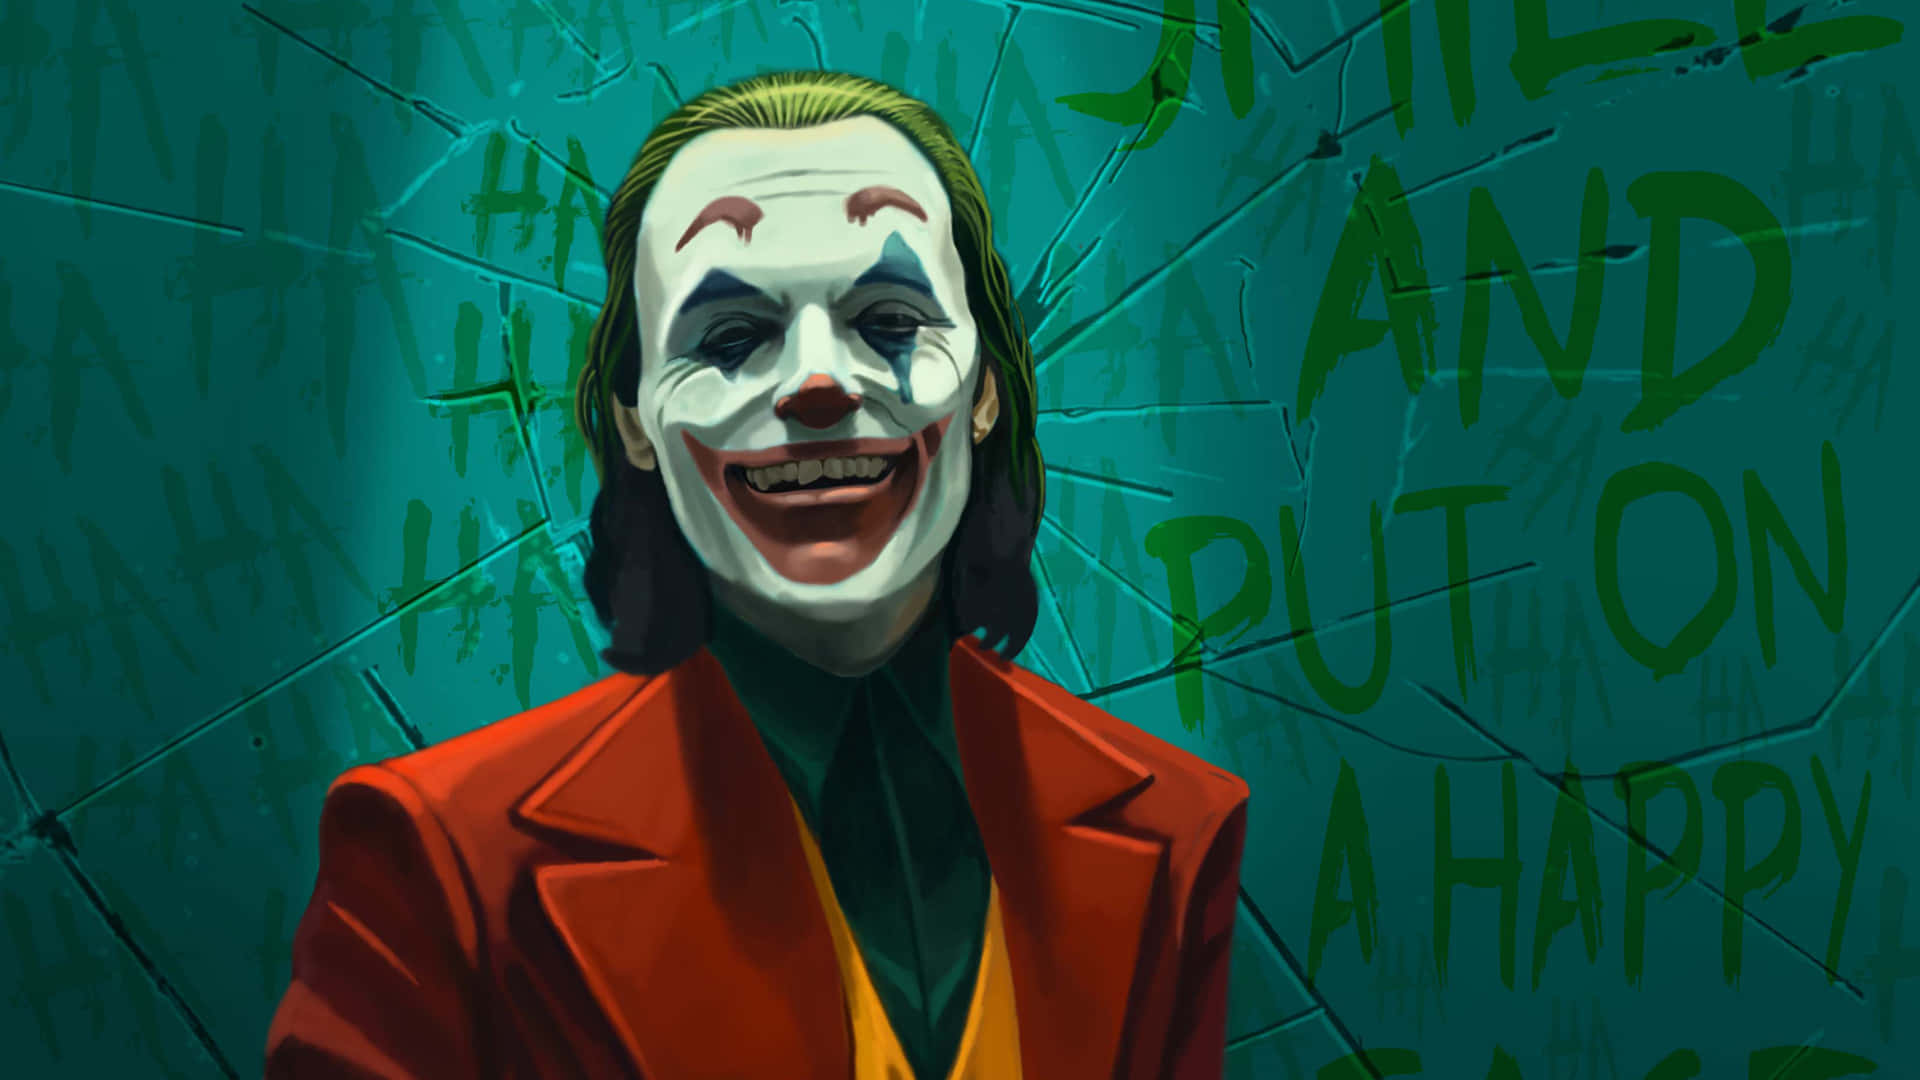 The Joker's Menacing Laughter